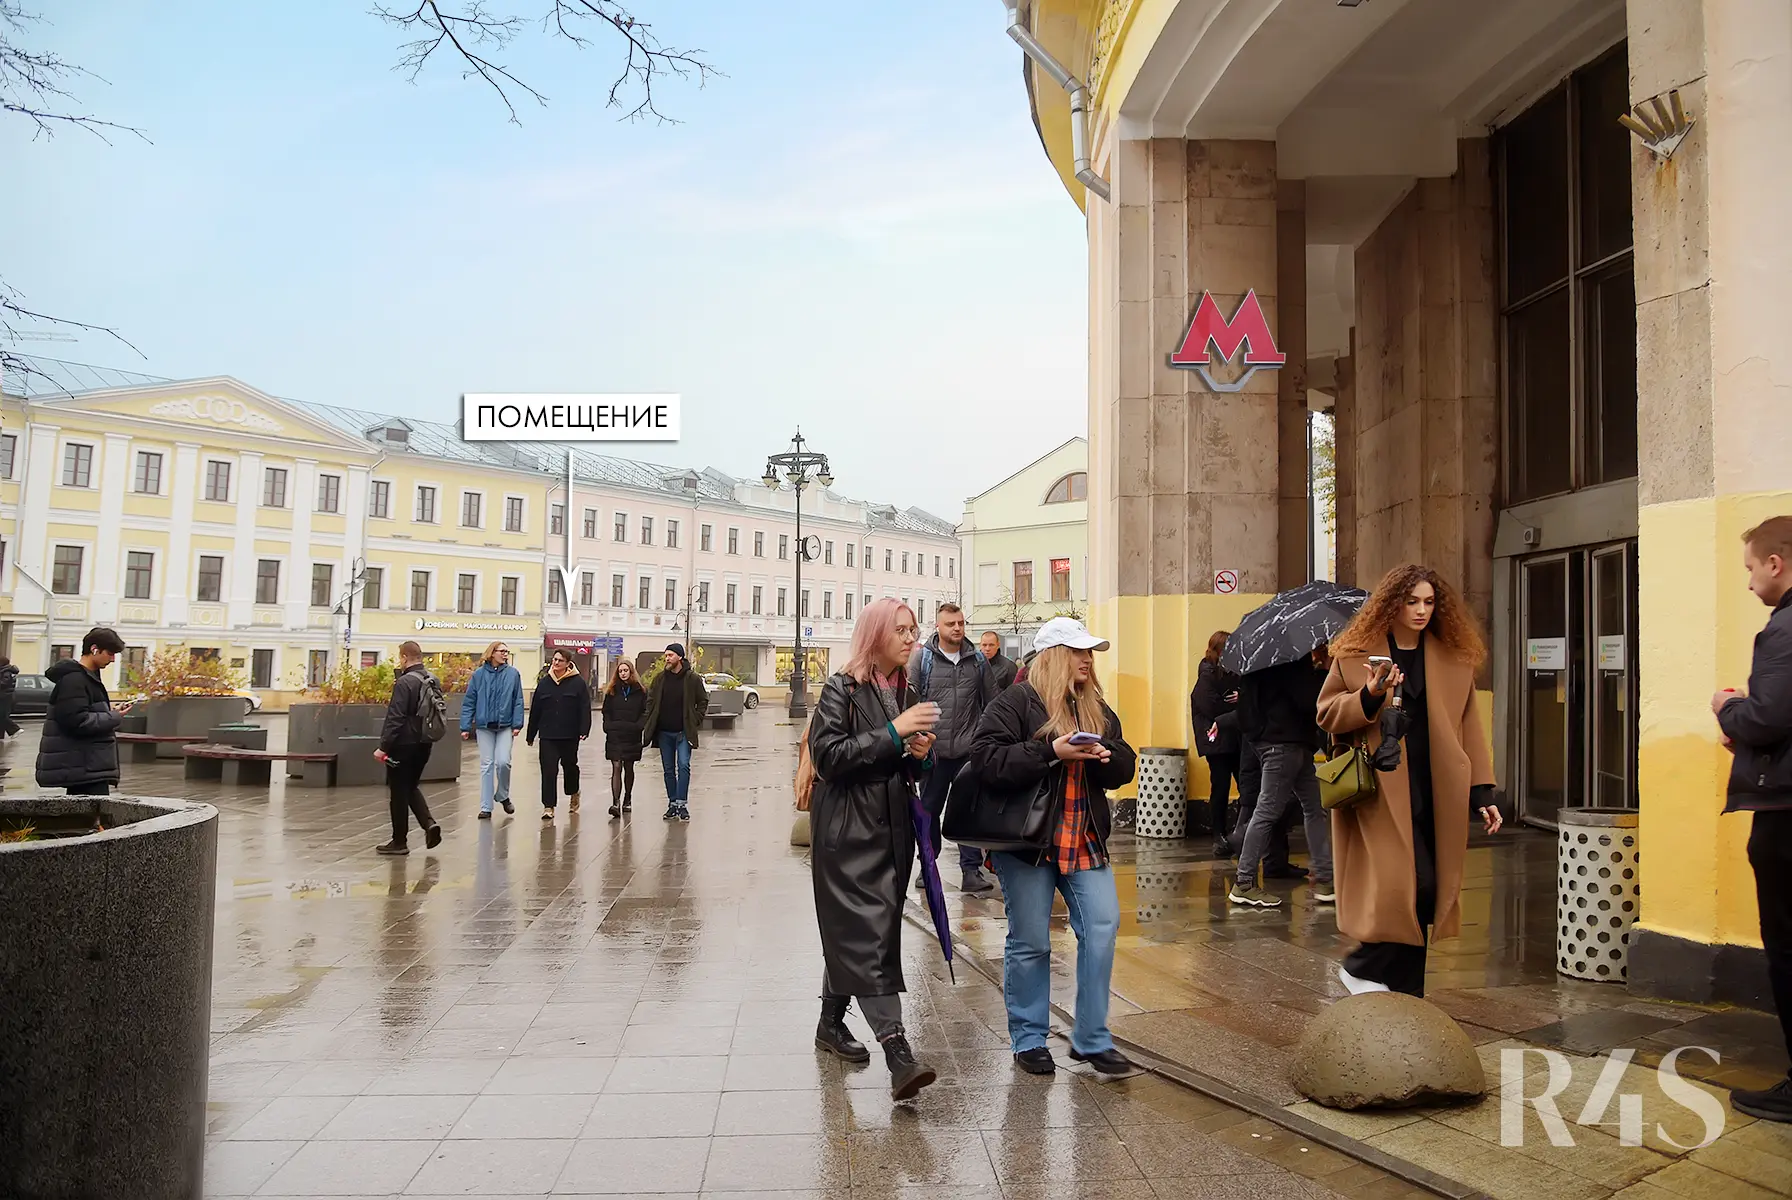 Продажа готового арендного бизнеса площадью 78.9 м2 в Москве: Пятницкая, 16с1 R4S | Realty4Sale